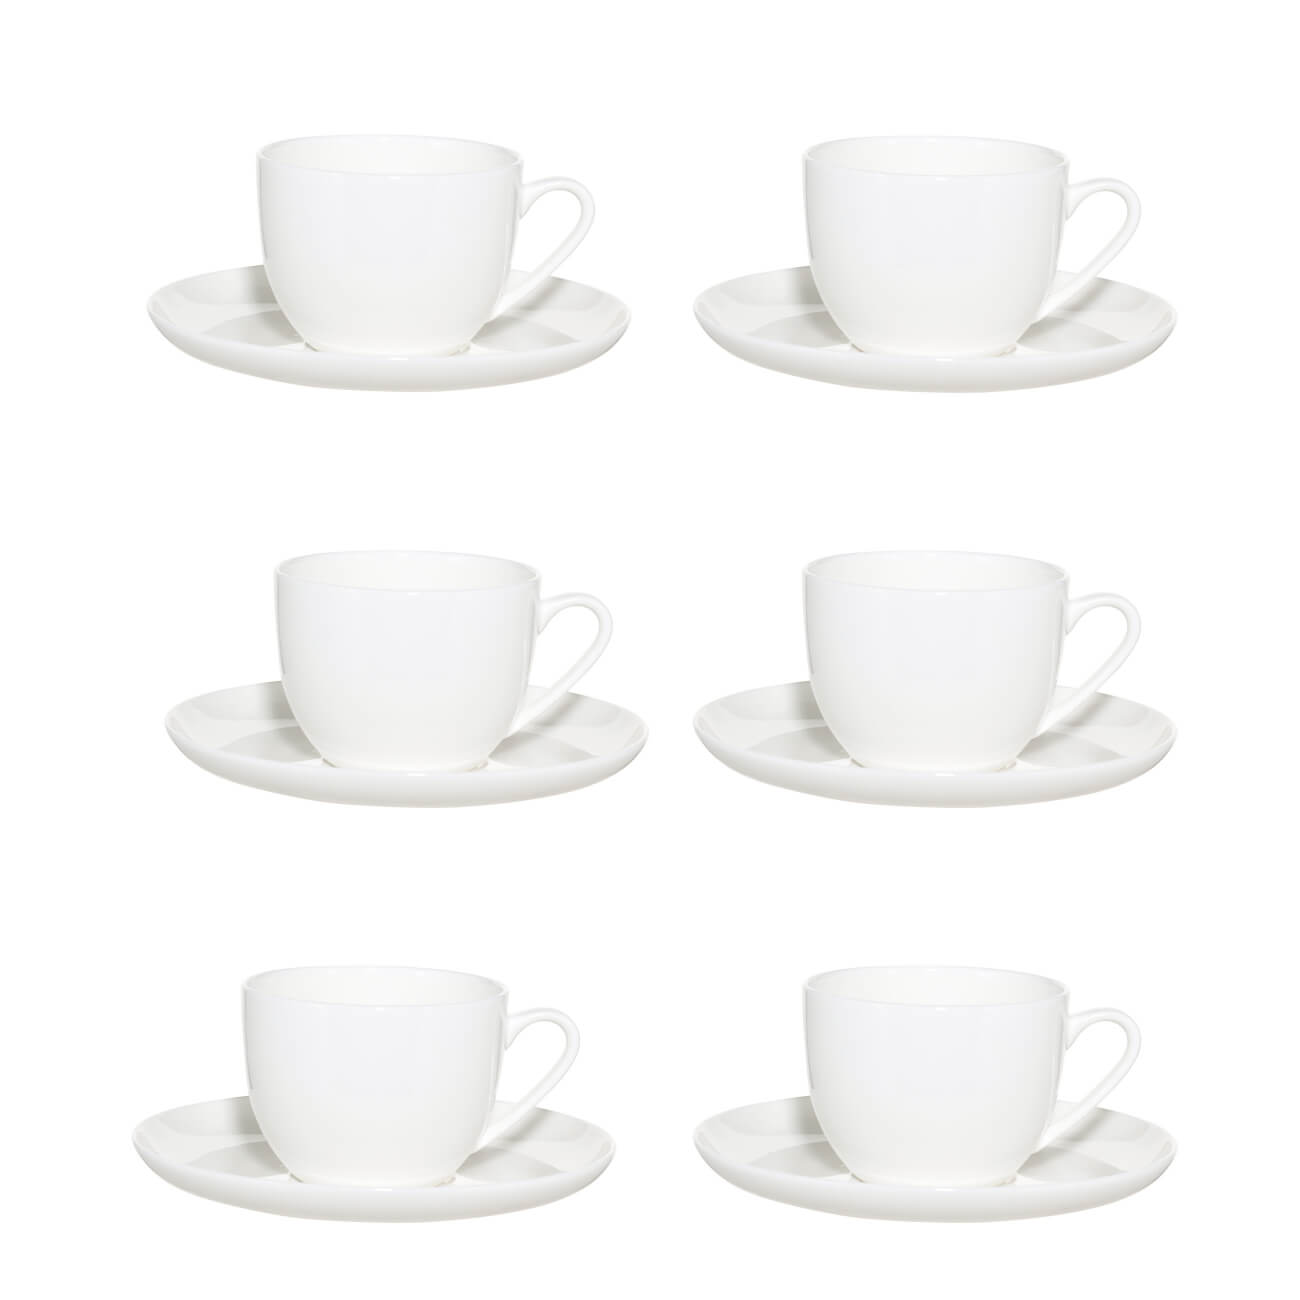 Пара чайная, 6 перс, 12 пр, 250 мл, фарфор F, белая, Ideal white чашка чайная 300 мл tudor royal circle